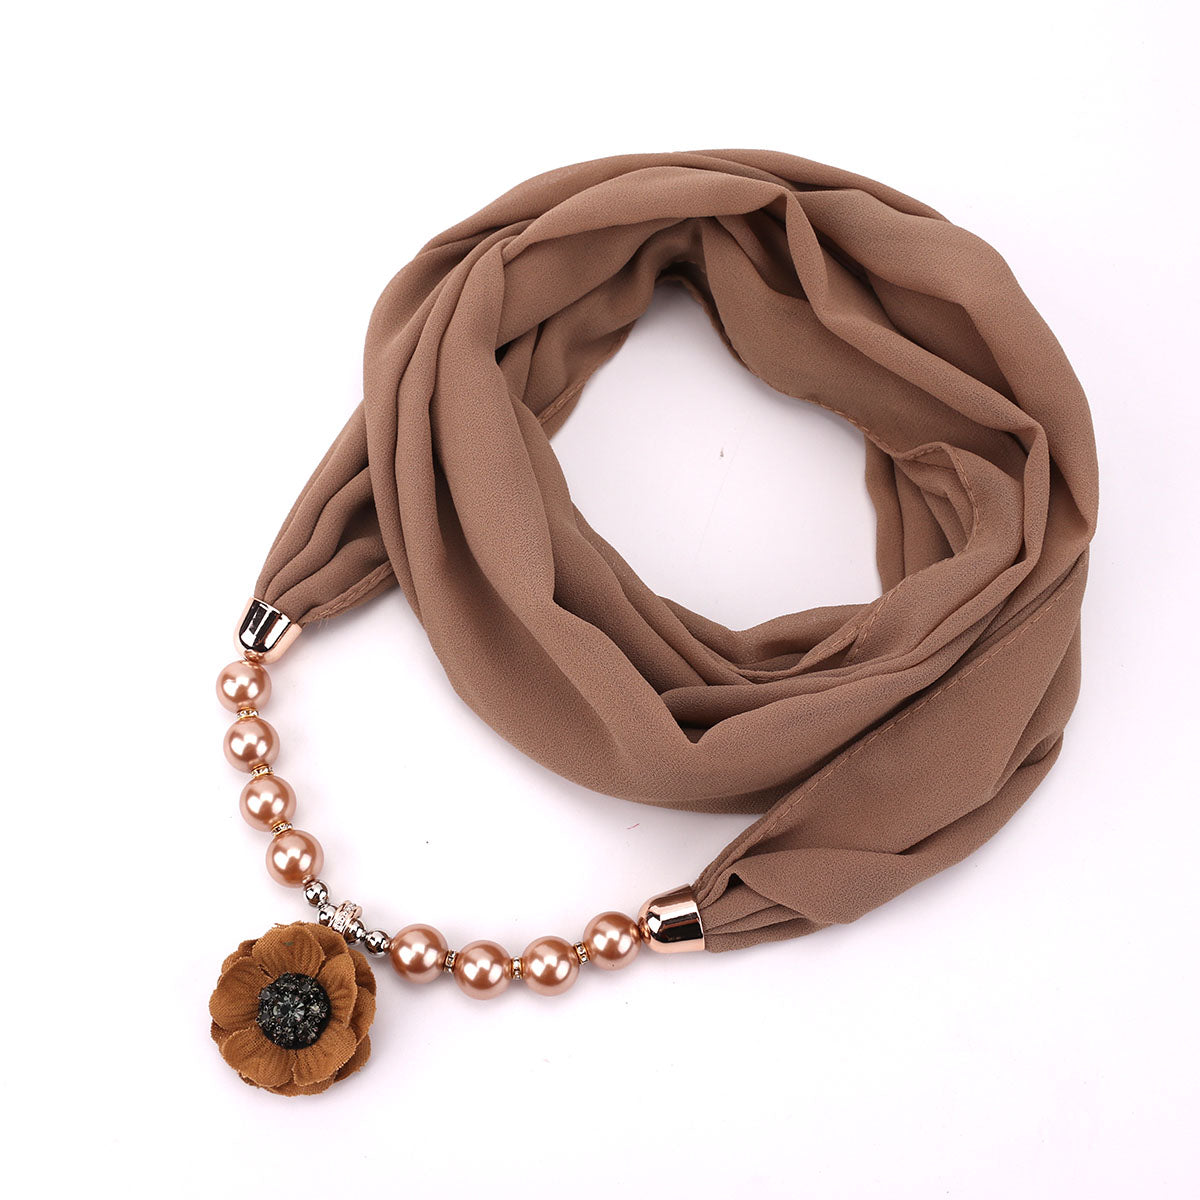 scarf1802